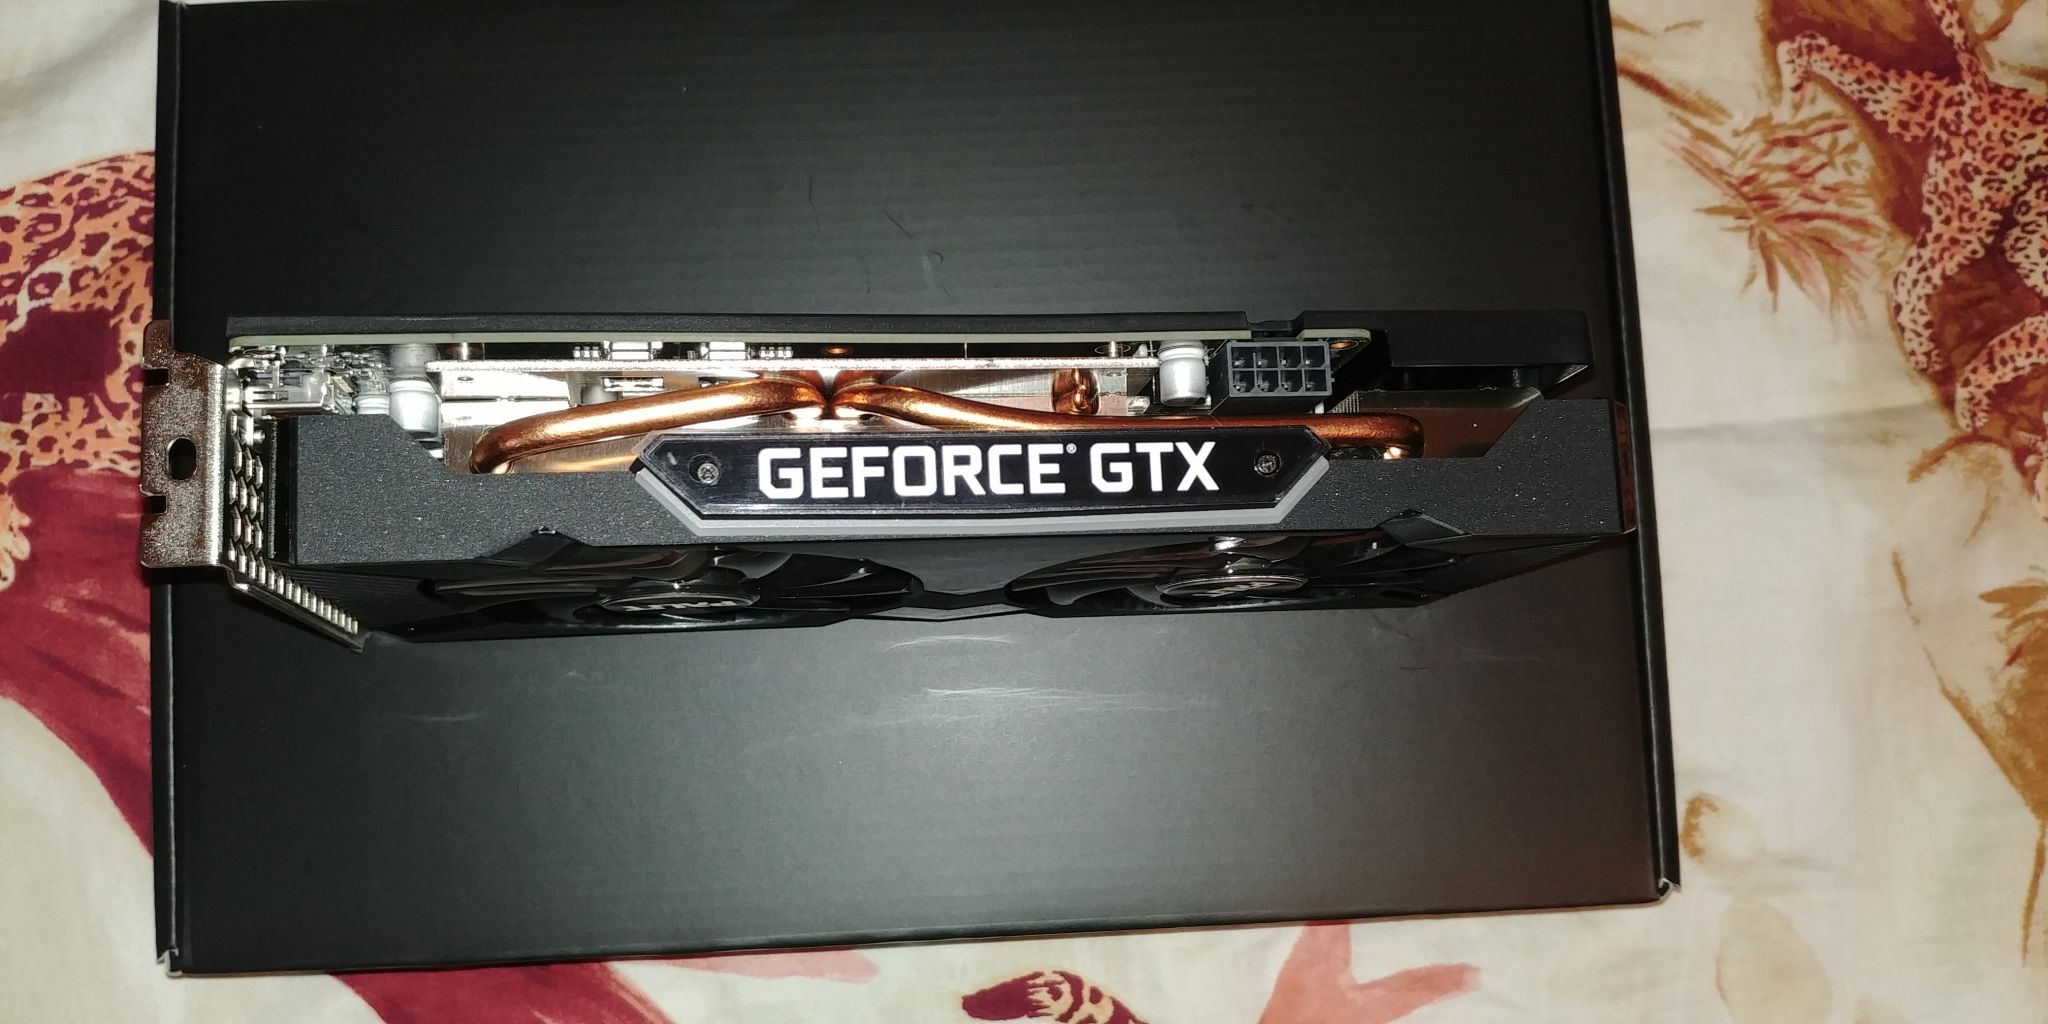 Geforce gtx 1660 gaming pro. Palit GEFORCE GTX 1660 super GP OC. Palit GEFORCE GTX 1660 super. Palit 1660 super 6gb. Palit GEFORCE GTX 1660 super 6.